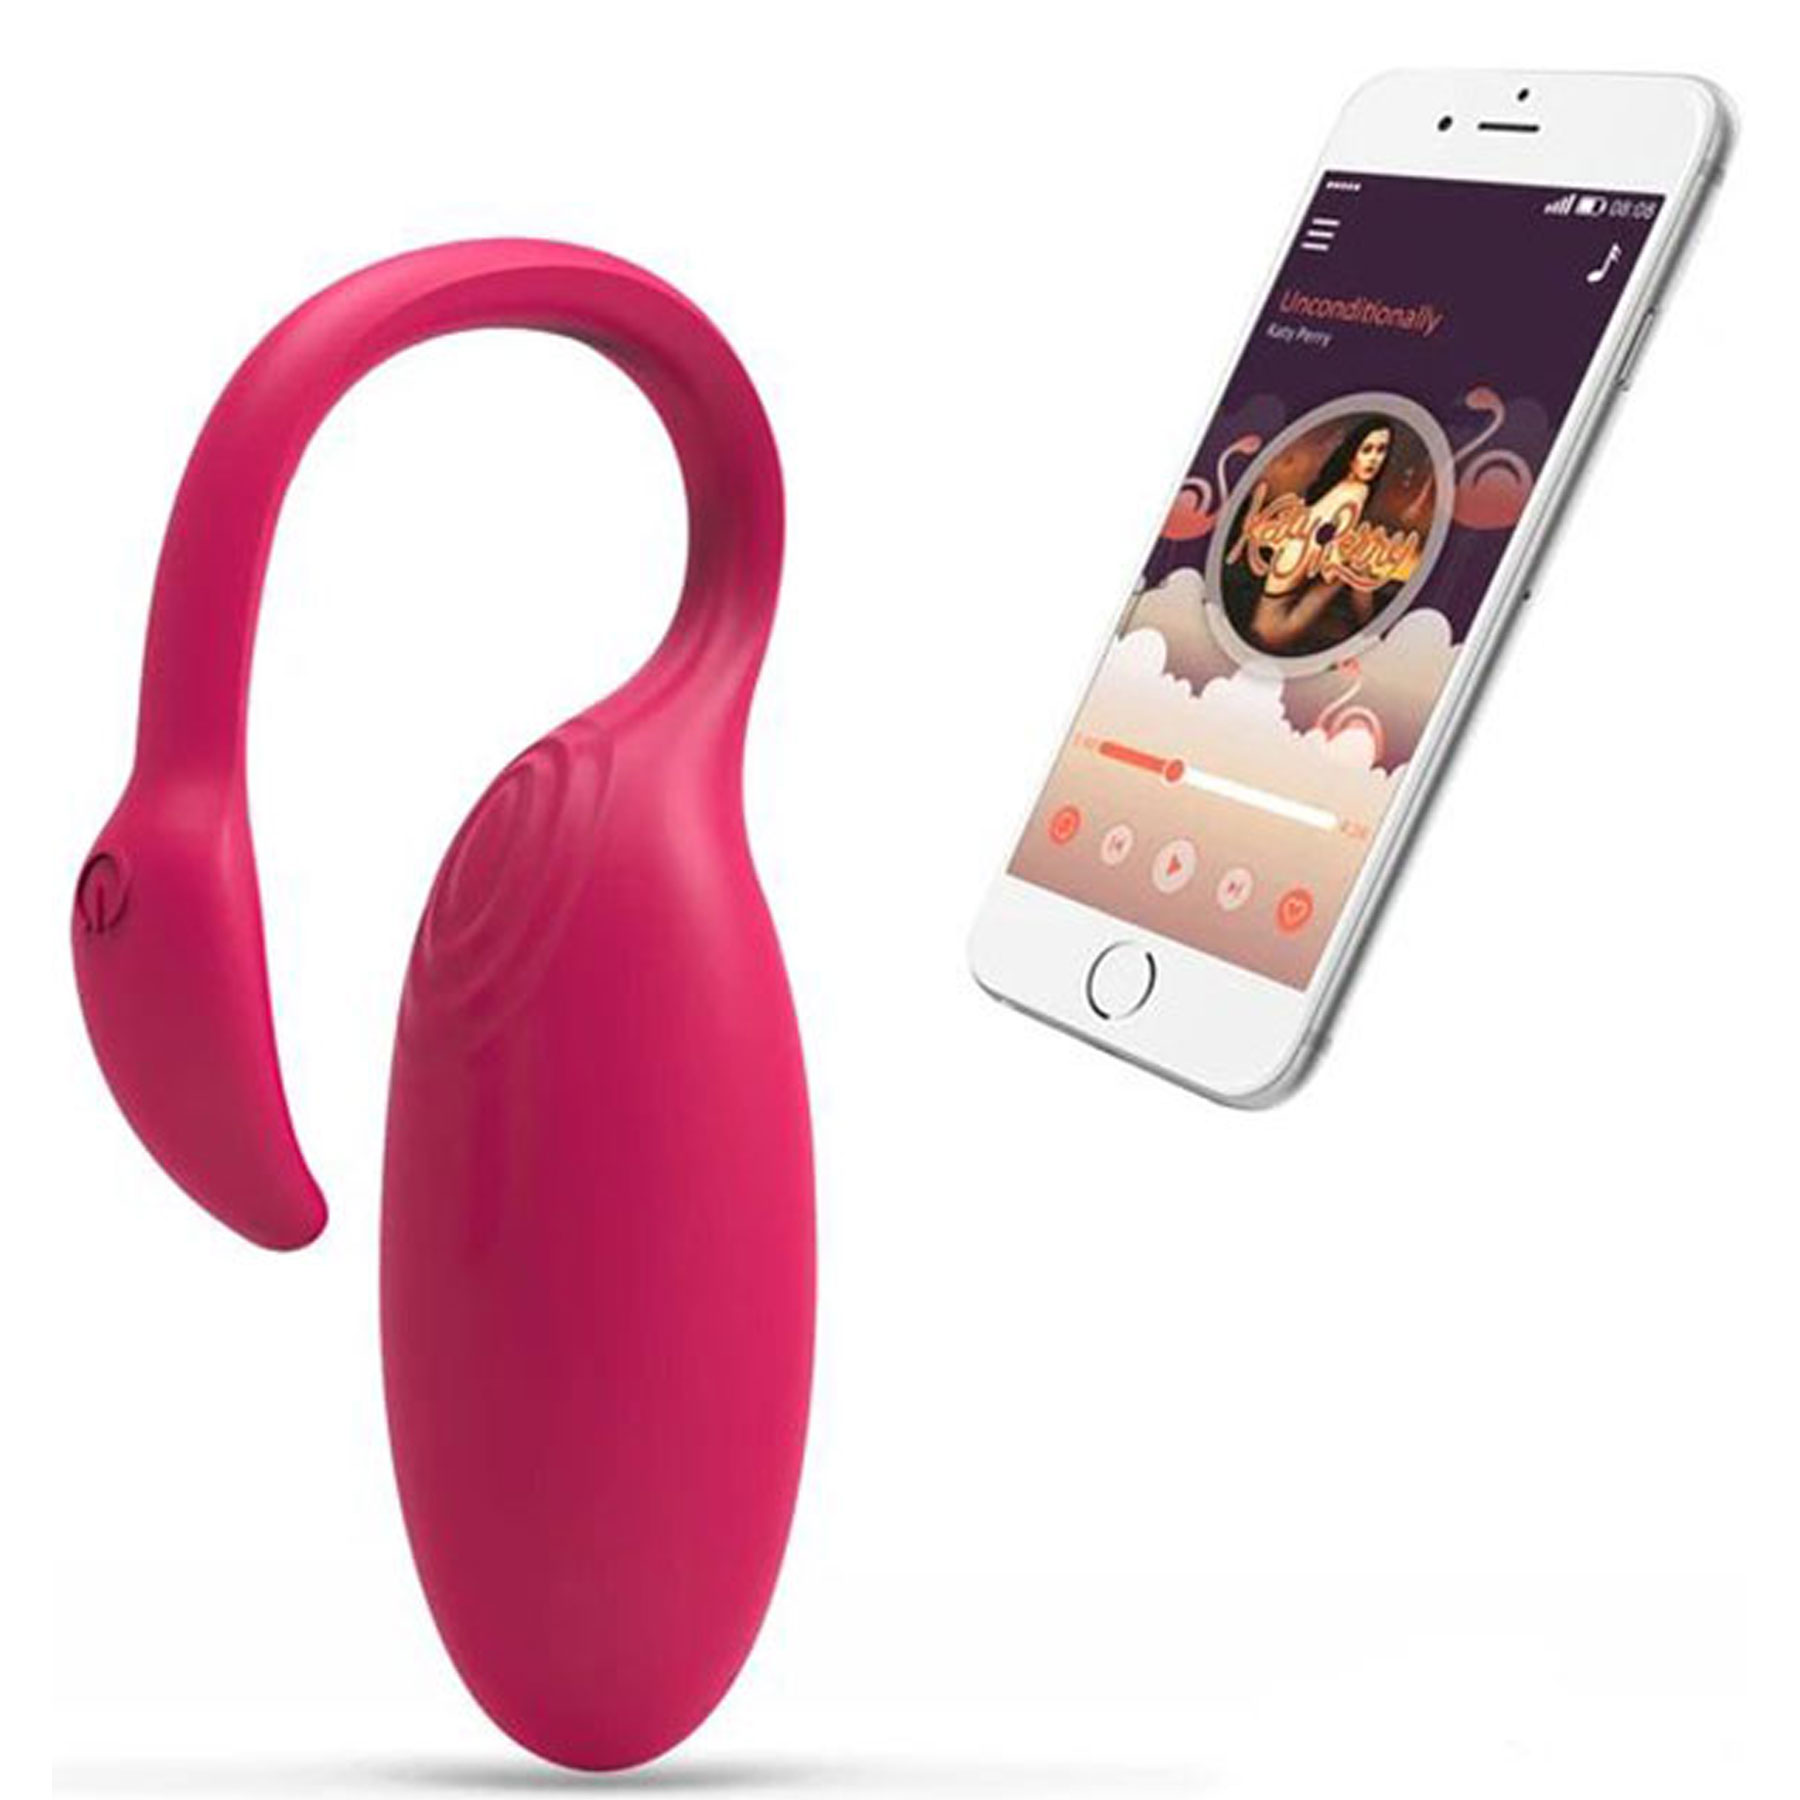 Flamingo Akıllı Telefon Uyumlu Vibratör ile Zevki Kontrol Etmek Artık Çok Kolay C-1070